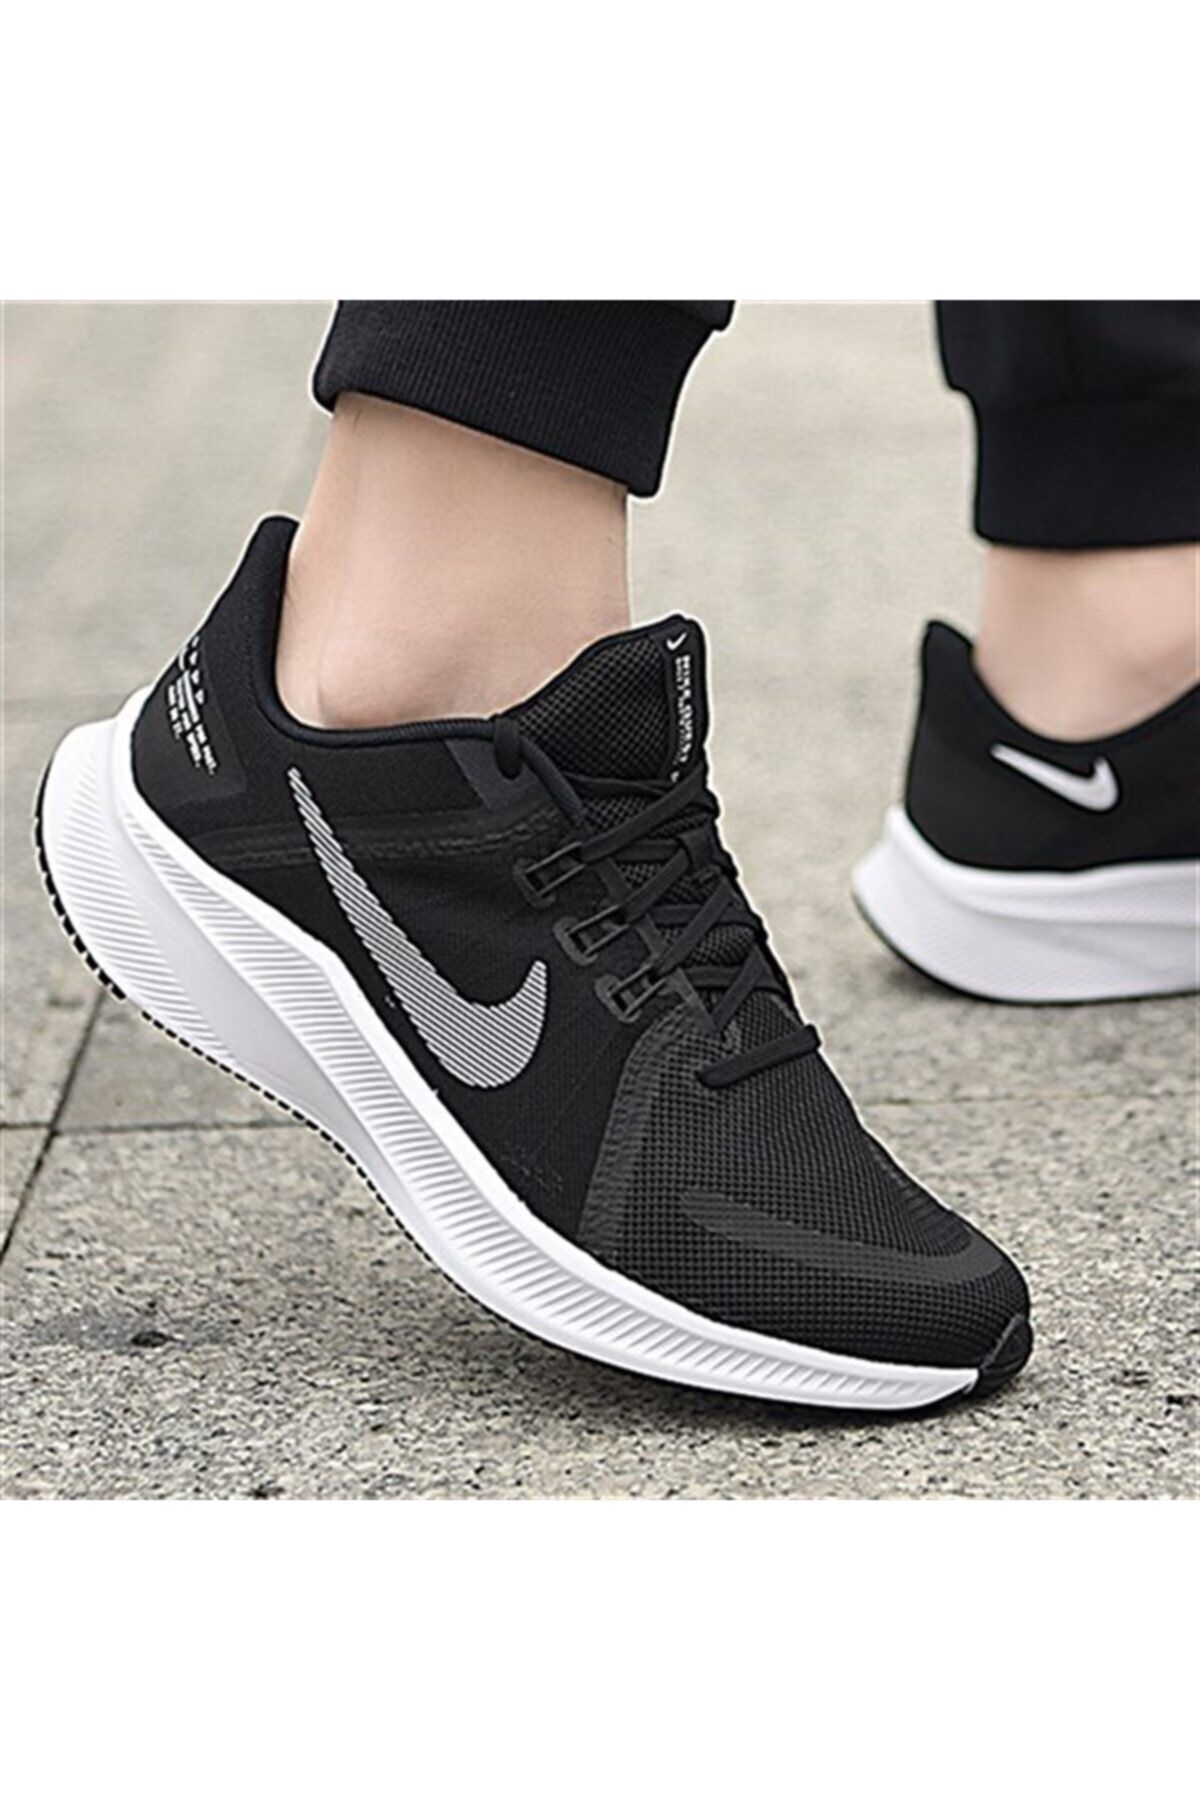 Nike Quest 4 Kadın Günlük Yürüyüş Koşu Spor Ayakkabı Siyah Da1106-006 V6